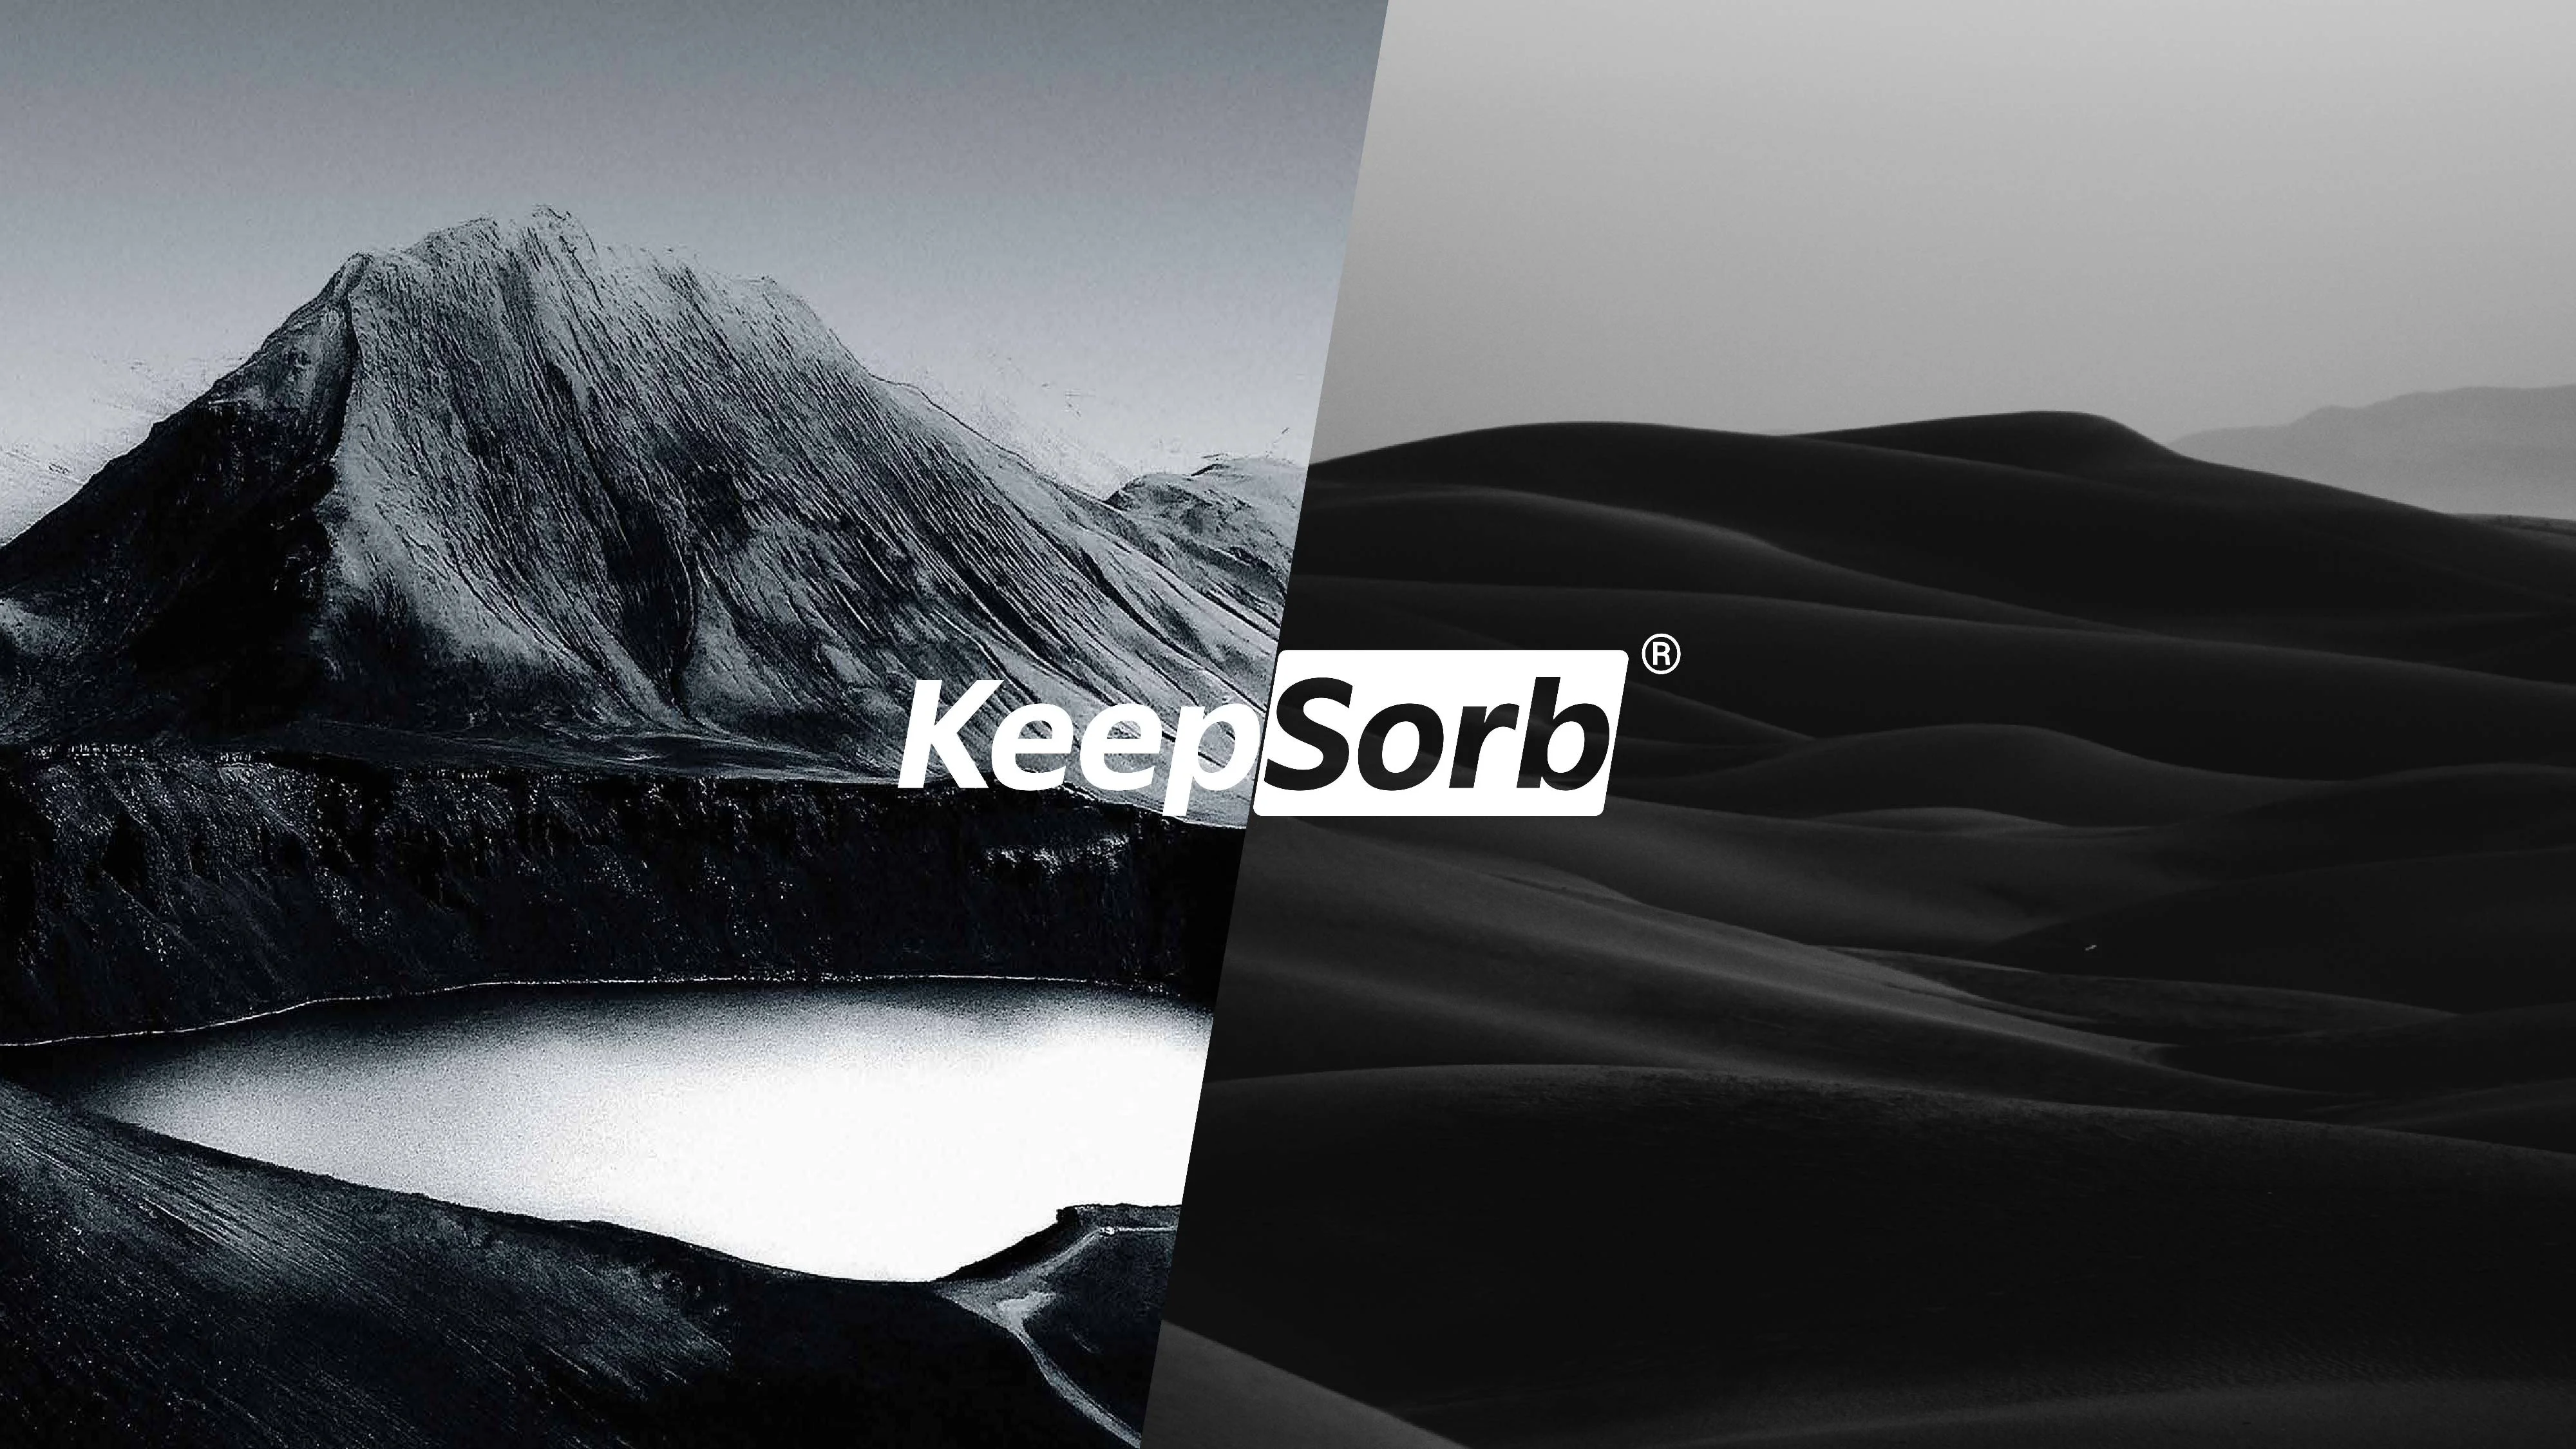 KeepSorb Markalama Tasarımı 